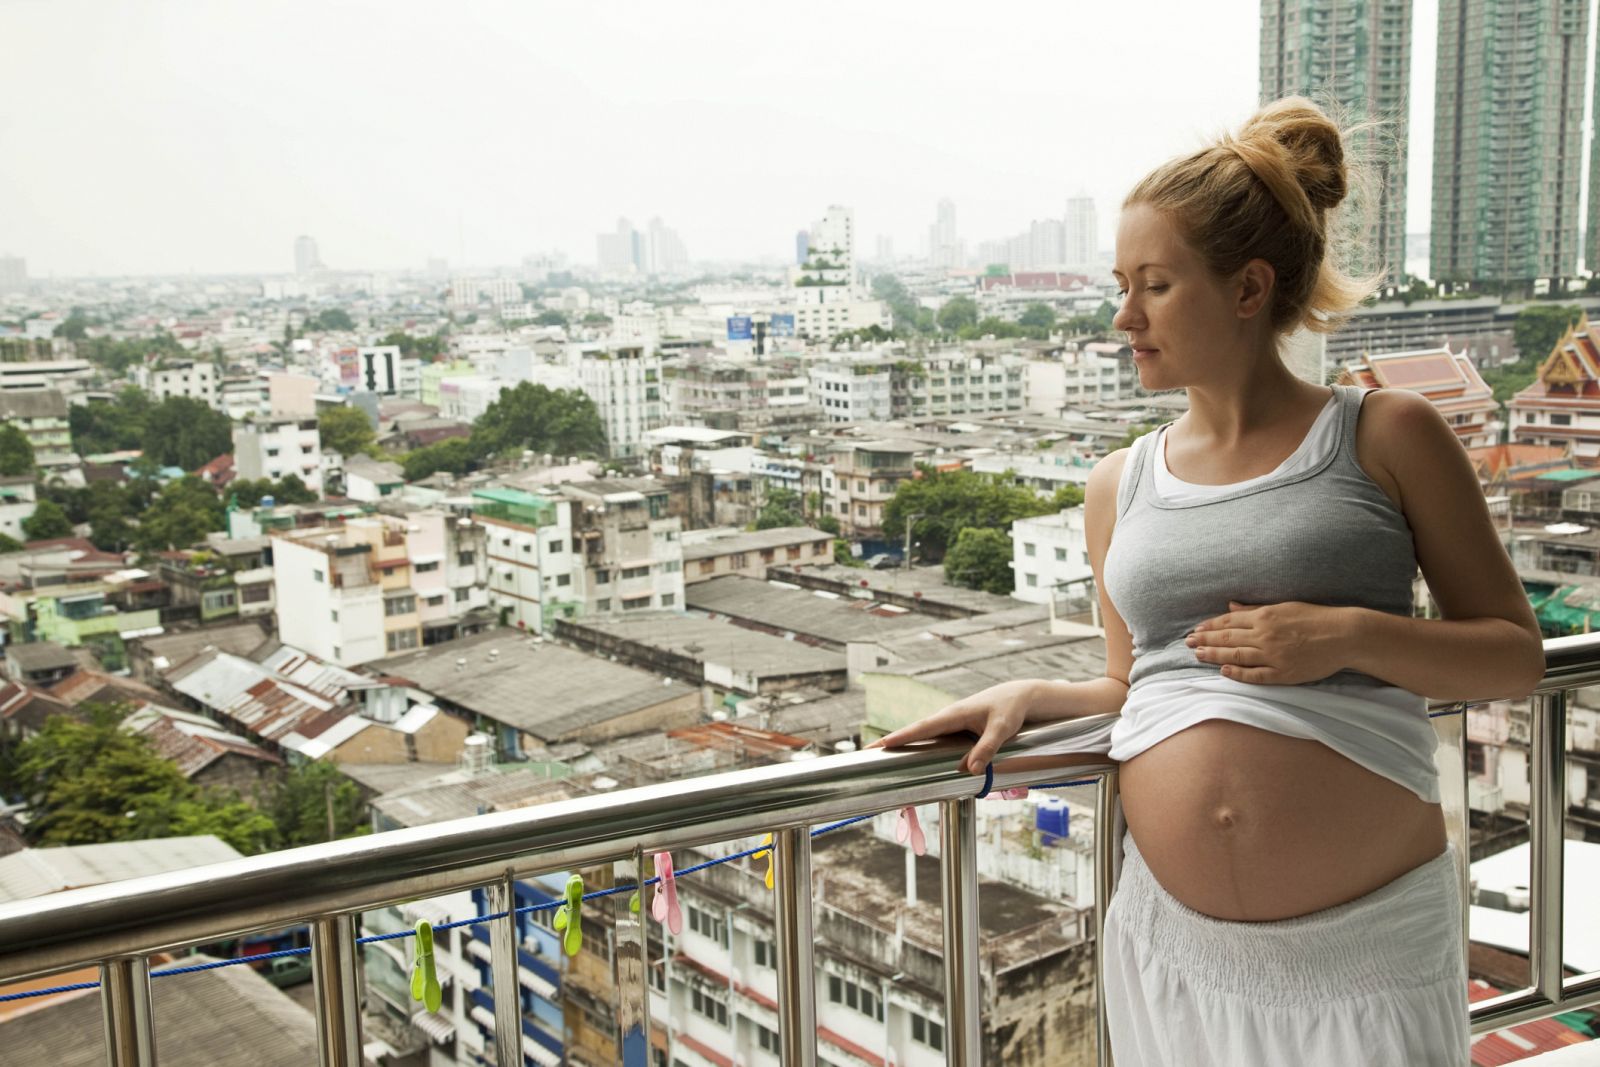 Una mujer embarazada observando el paisaje urbano.